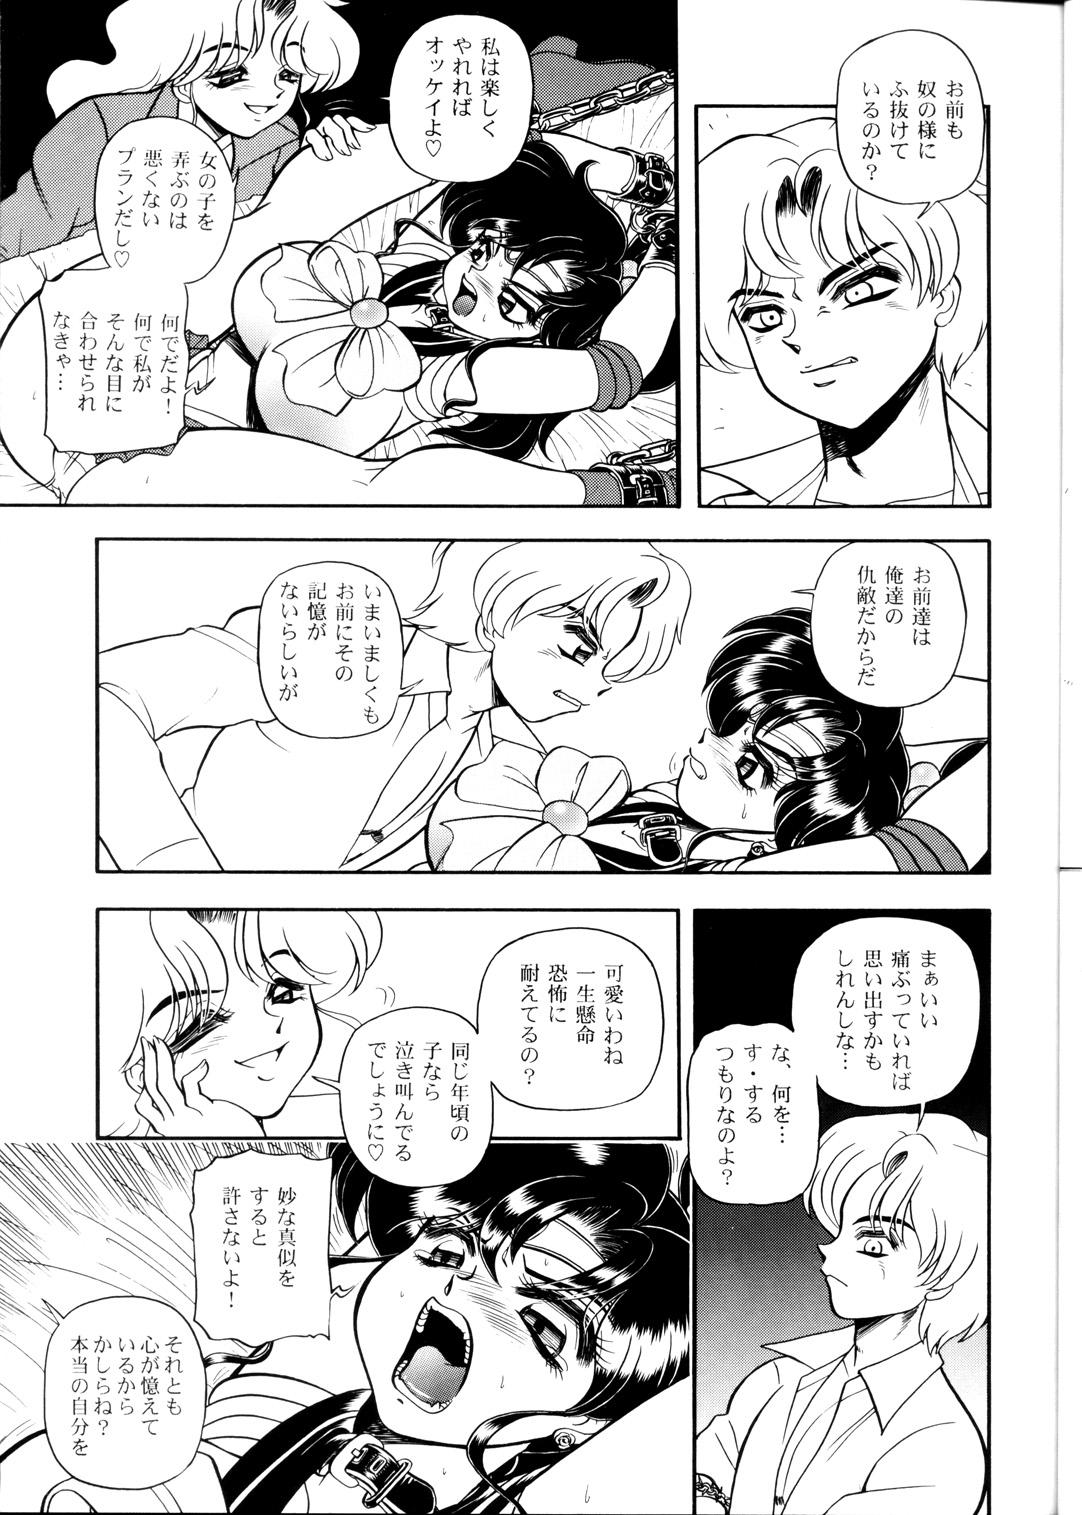 Rola S·M↔R - Sailor moon Suck - Page 9